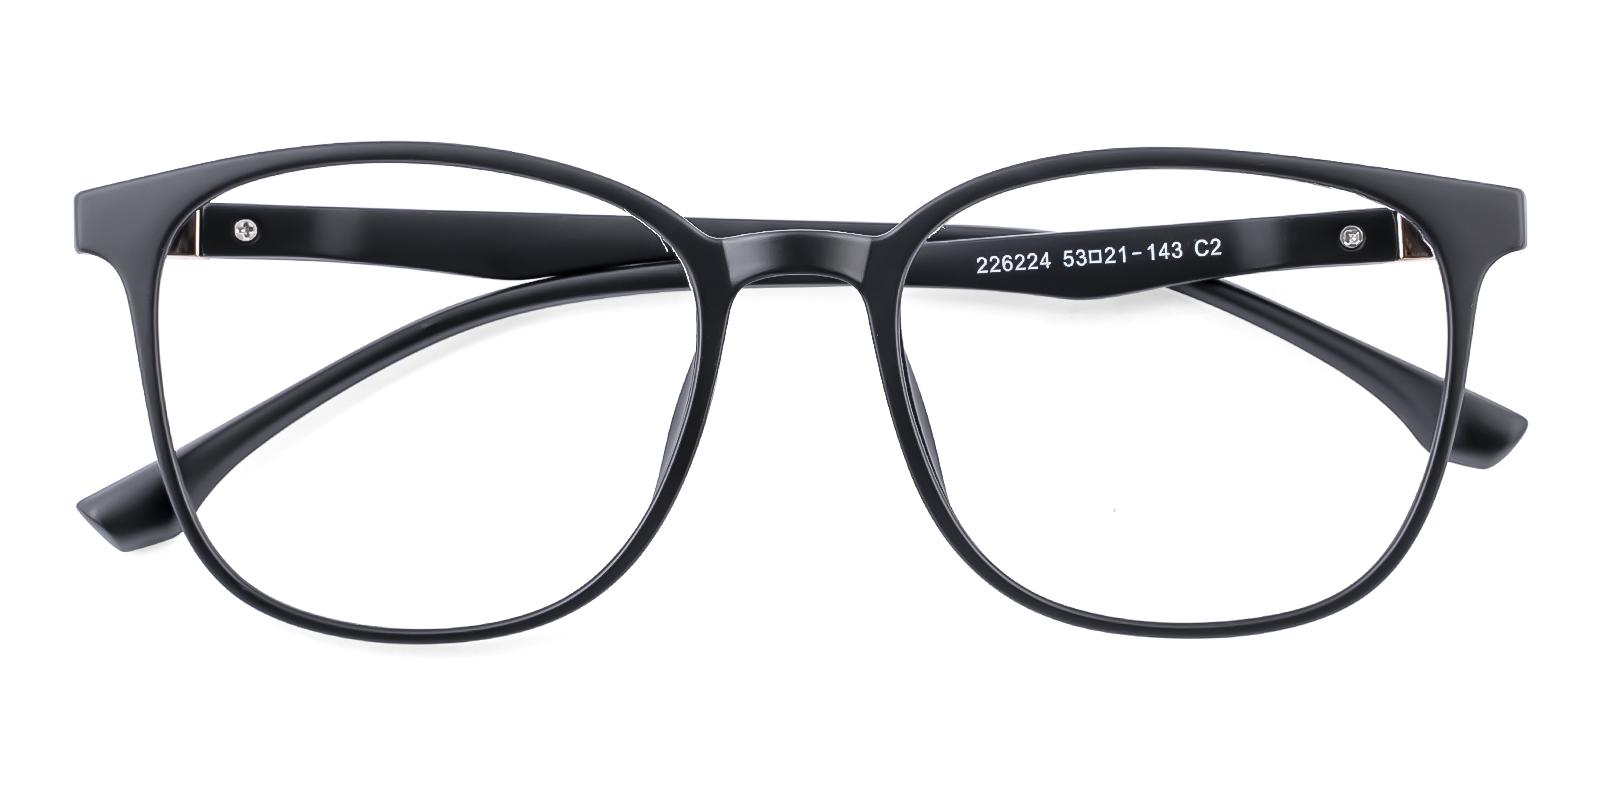 Oram Matte-black Plastic Eyeglasses , UniversalBridgeFit Frames from ABBE Glasses